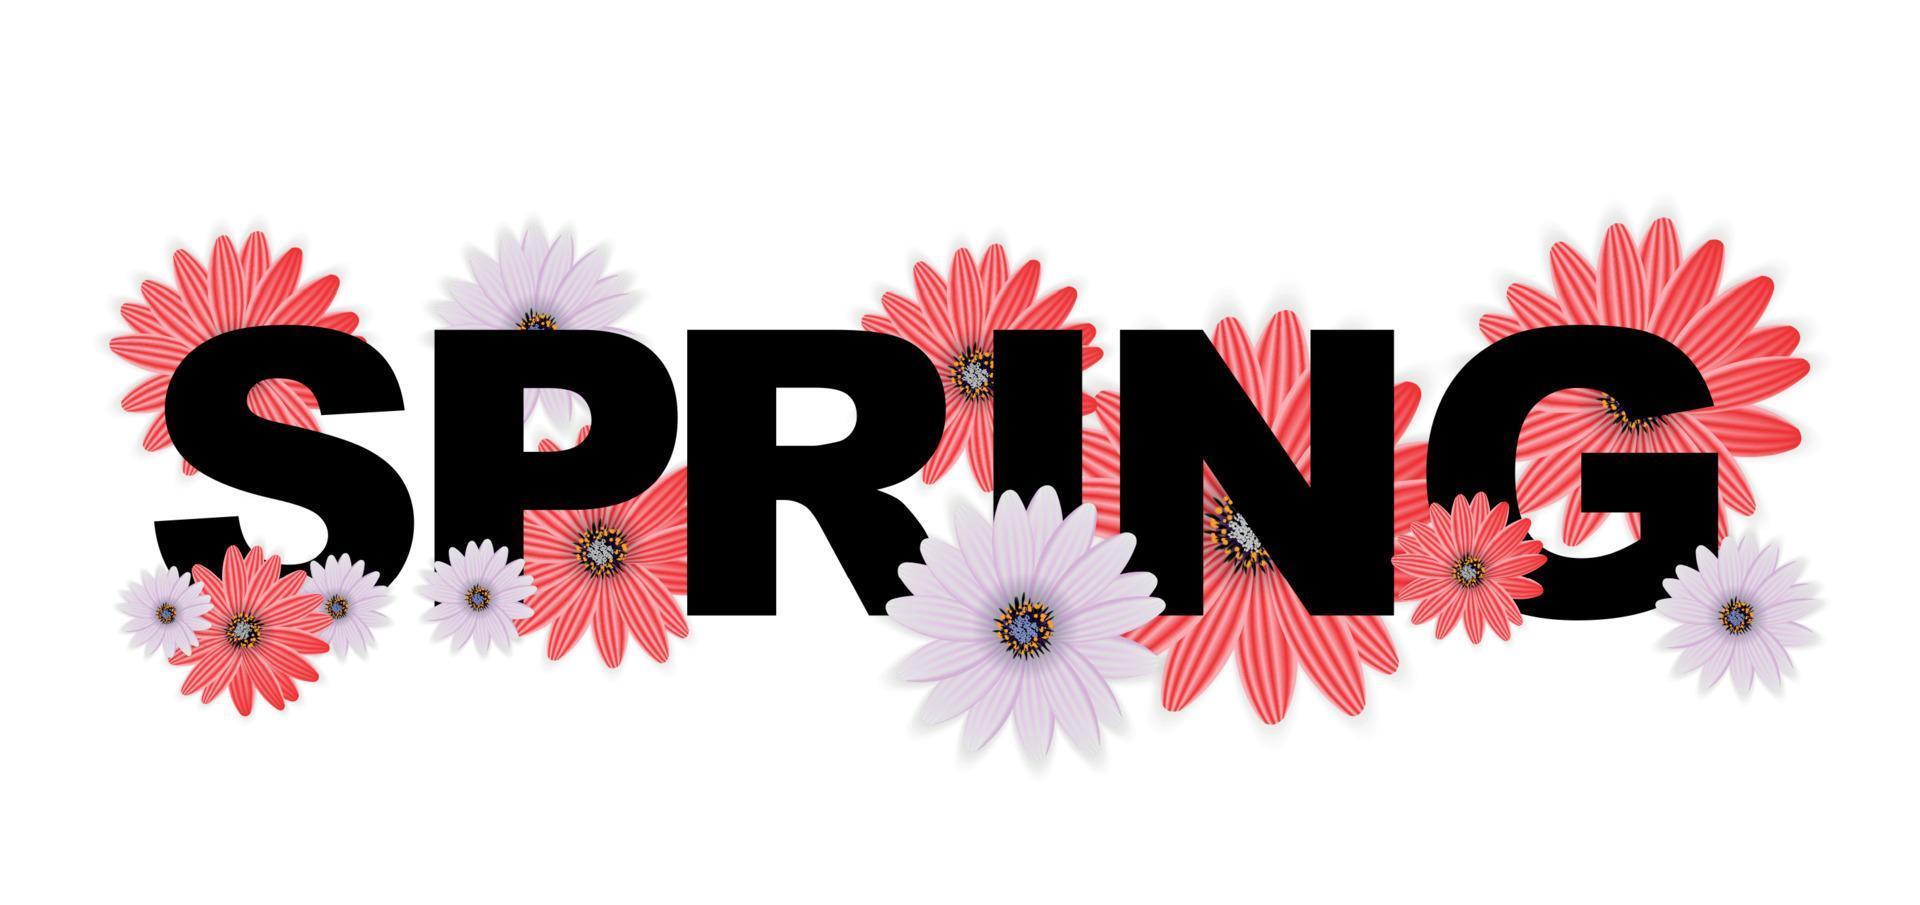 Olá, saudações de banner de primavera desenha o plano de fundo com elementos de flores coloridas. ilustração vetorial vetor